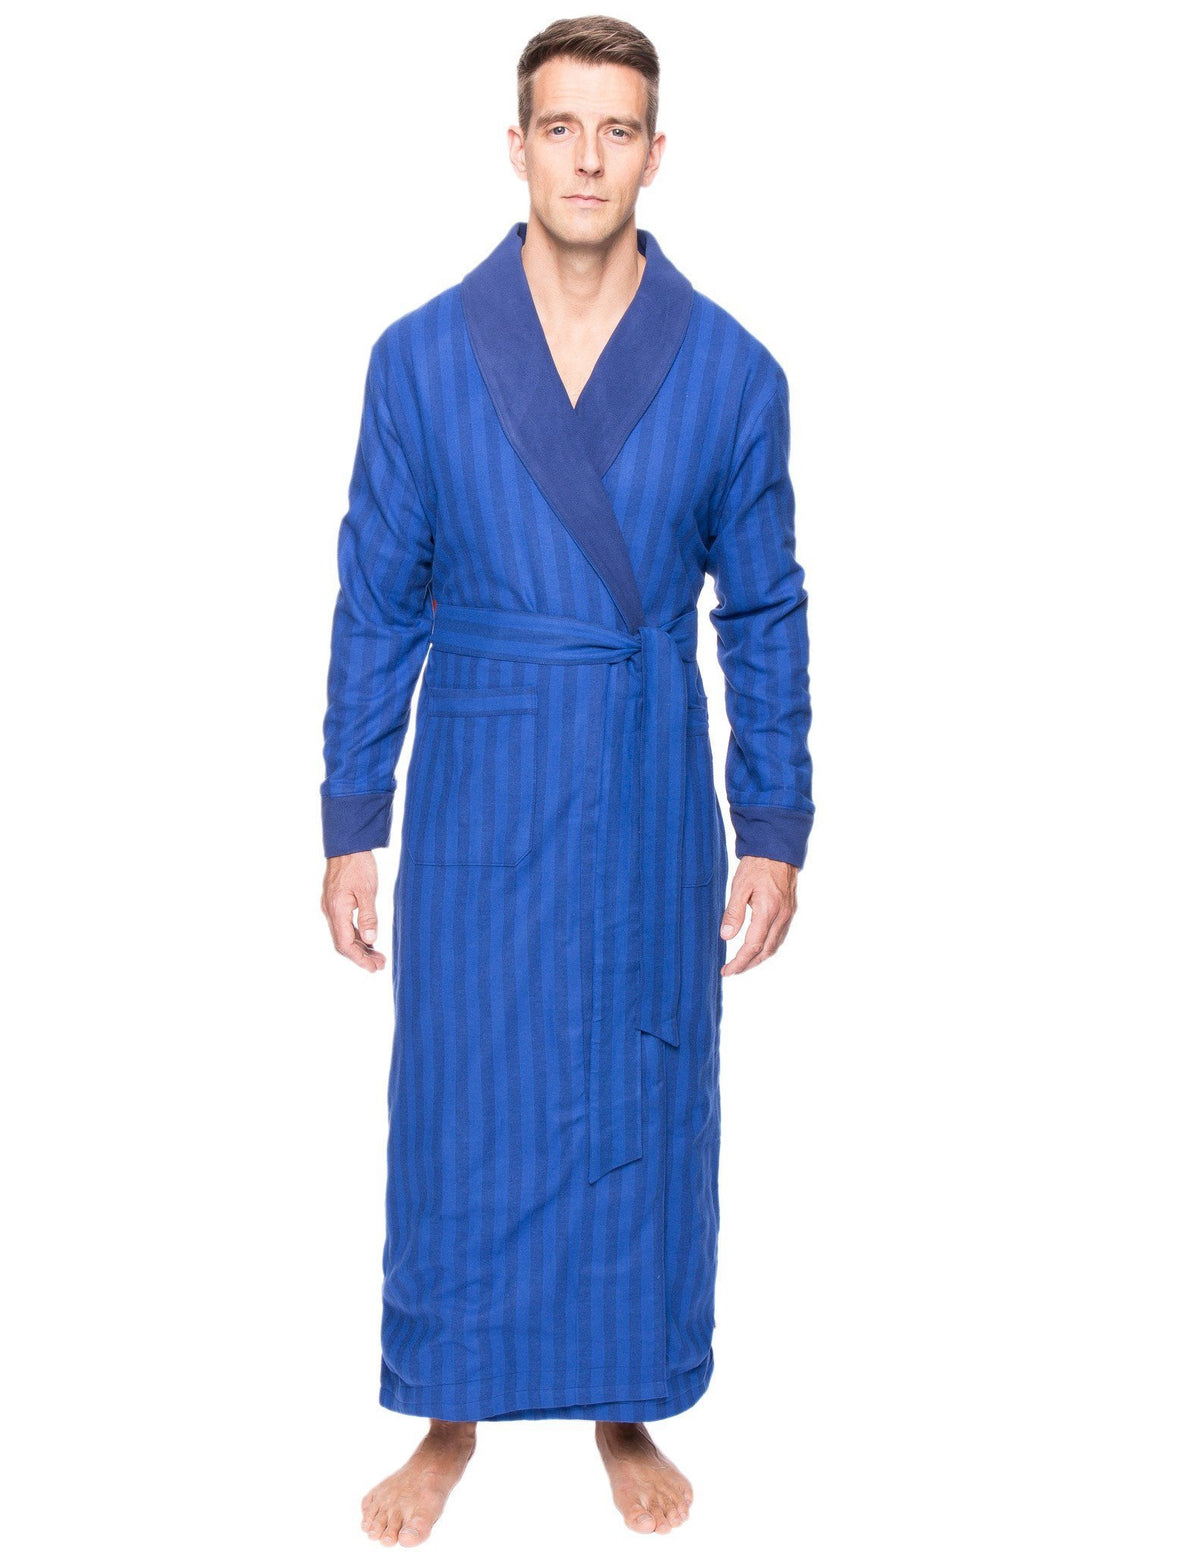 Men's Premium 100% Cotton Flannel Fleece Lined Robe - Stripes Tonal Blue